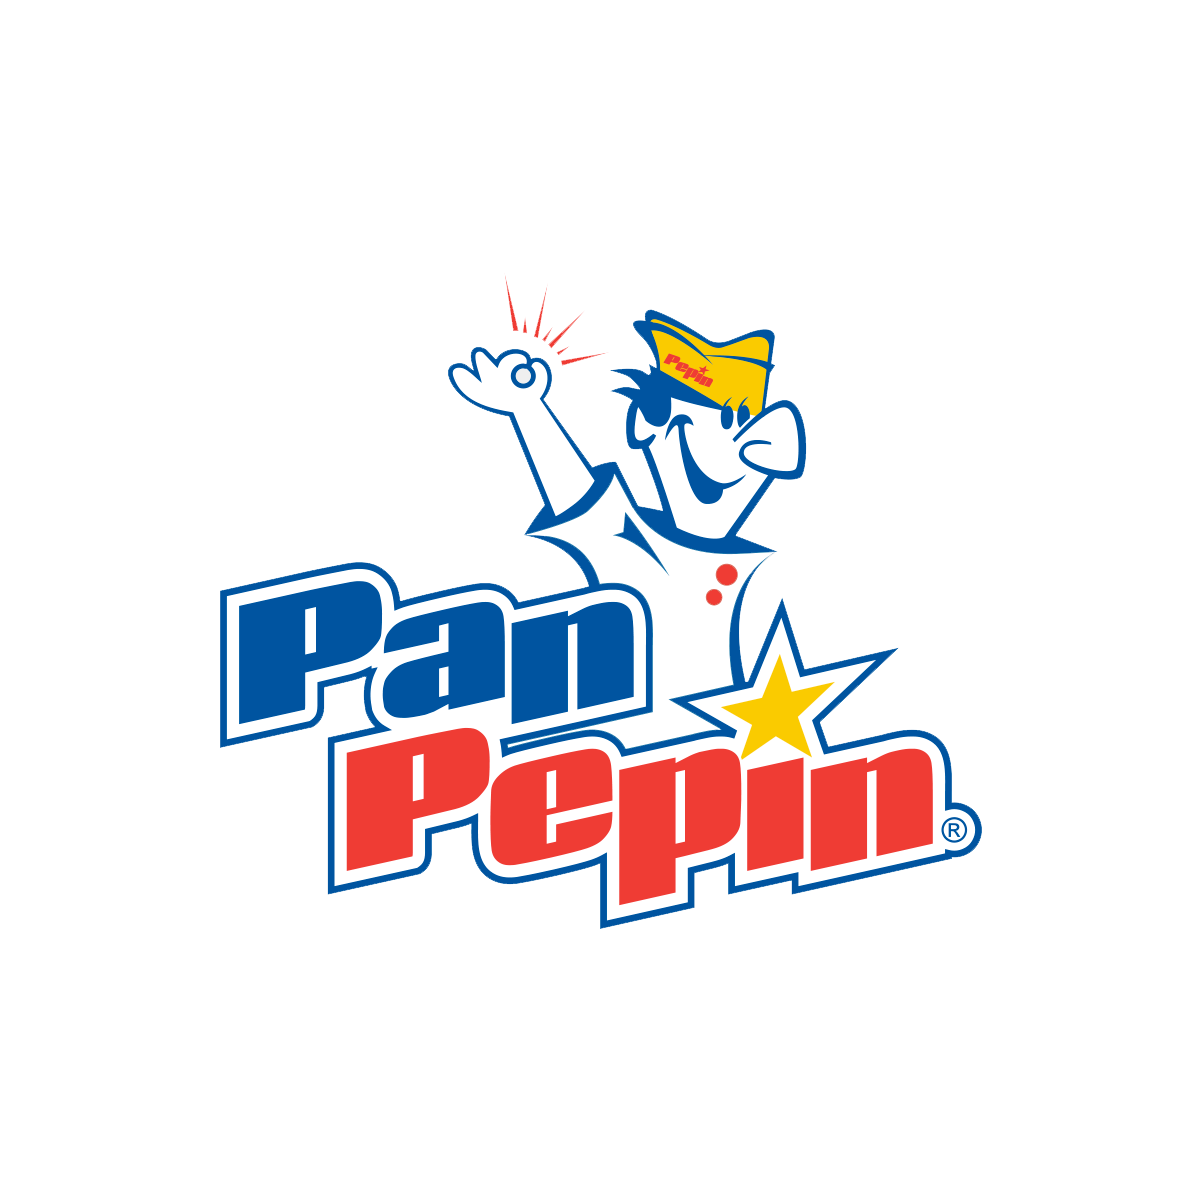 Pan Pepin